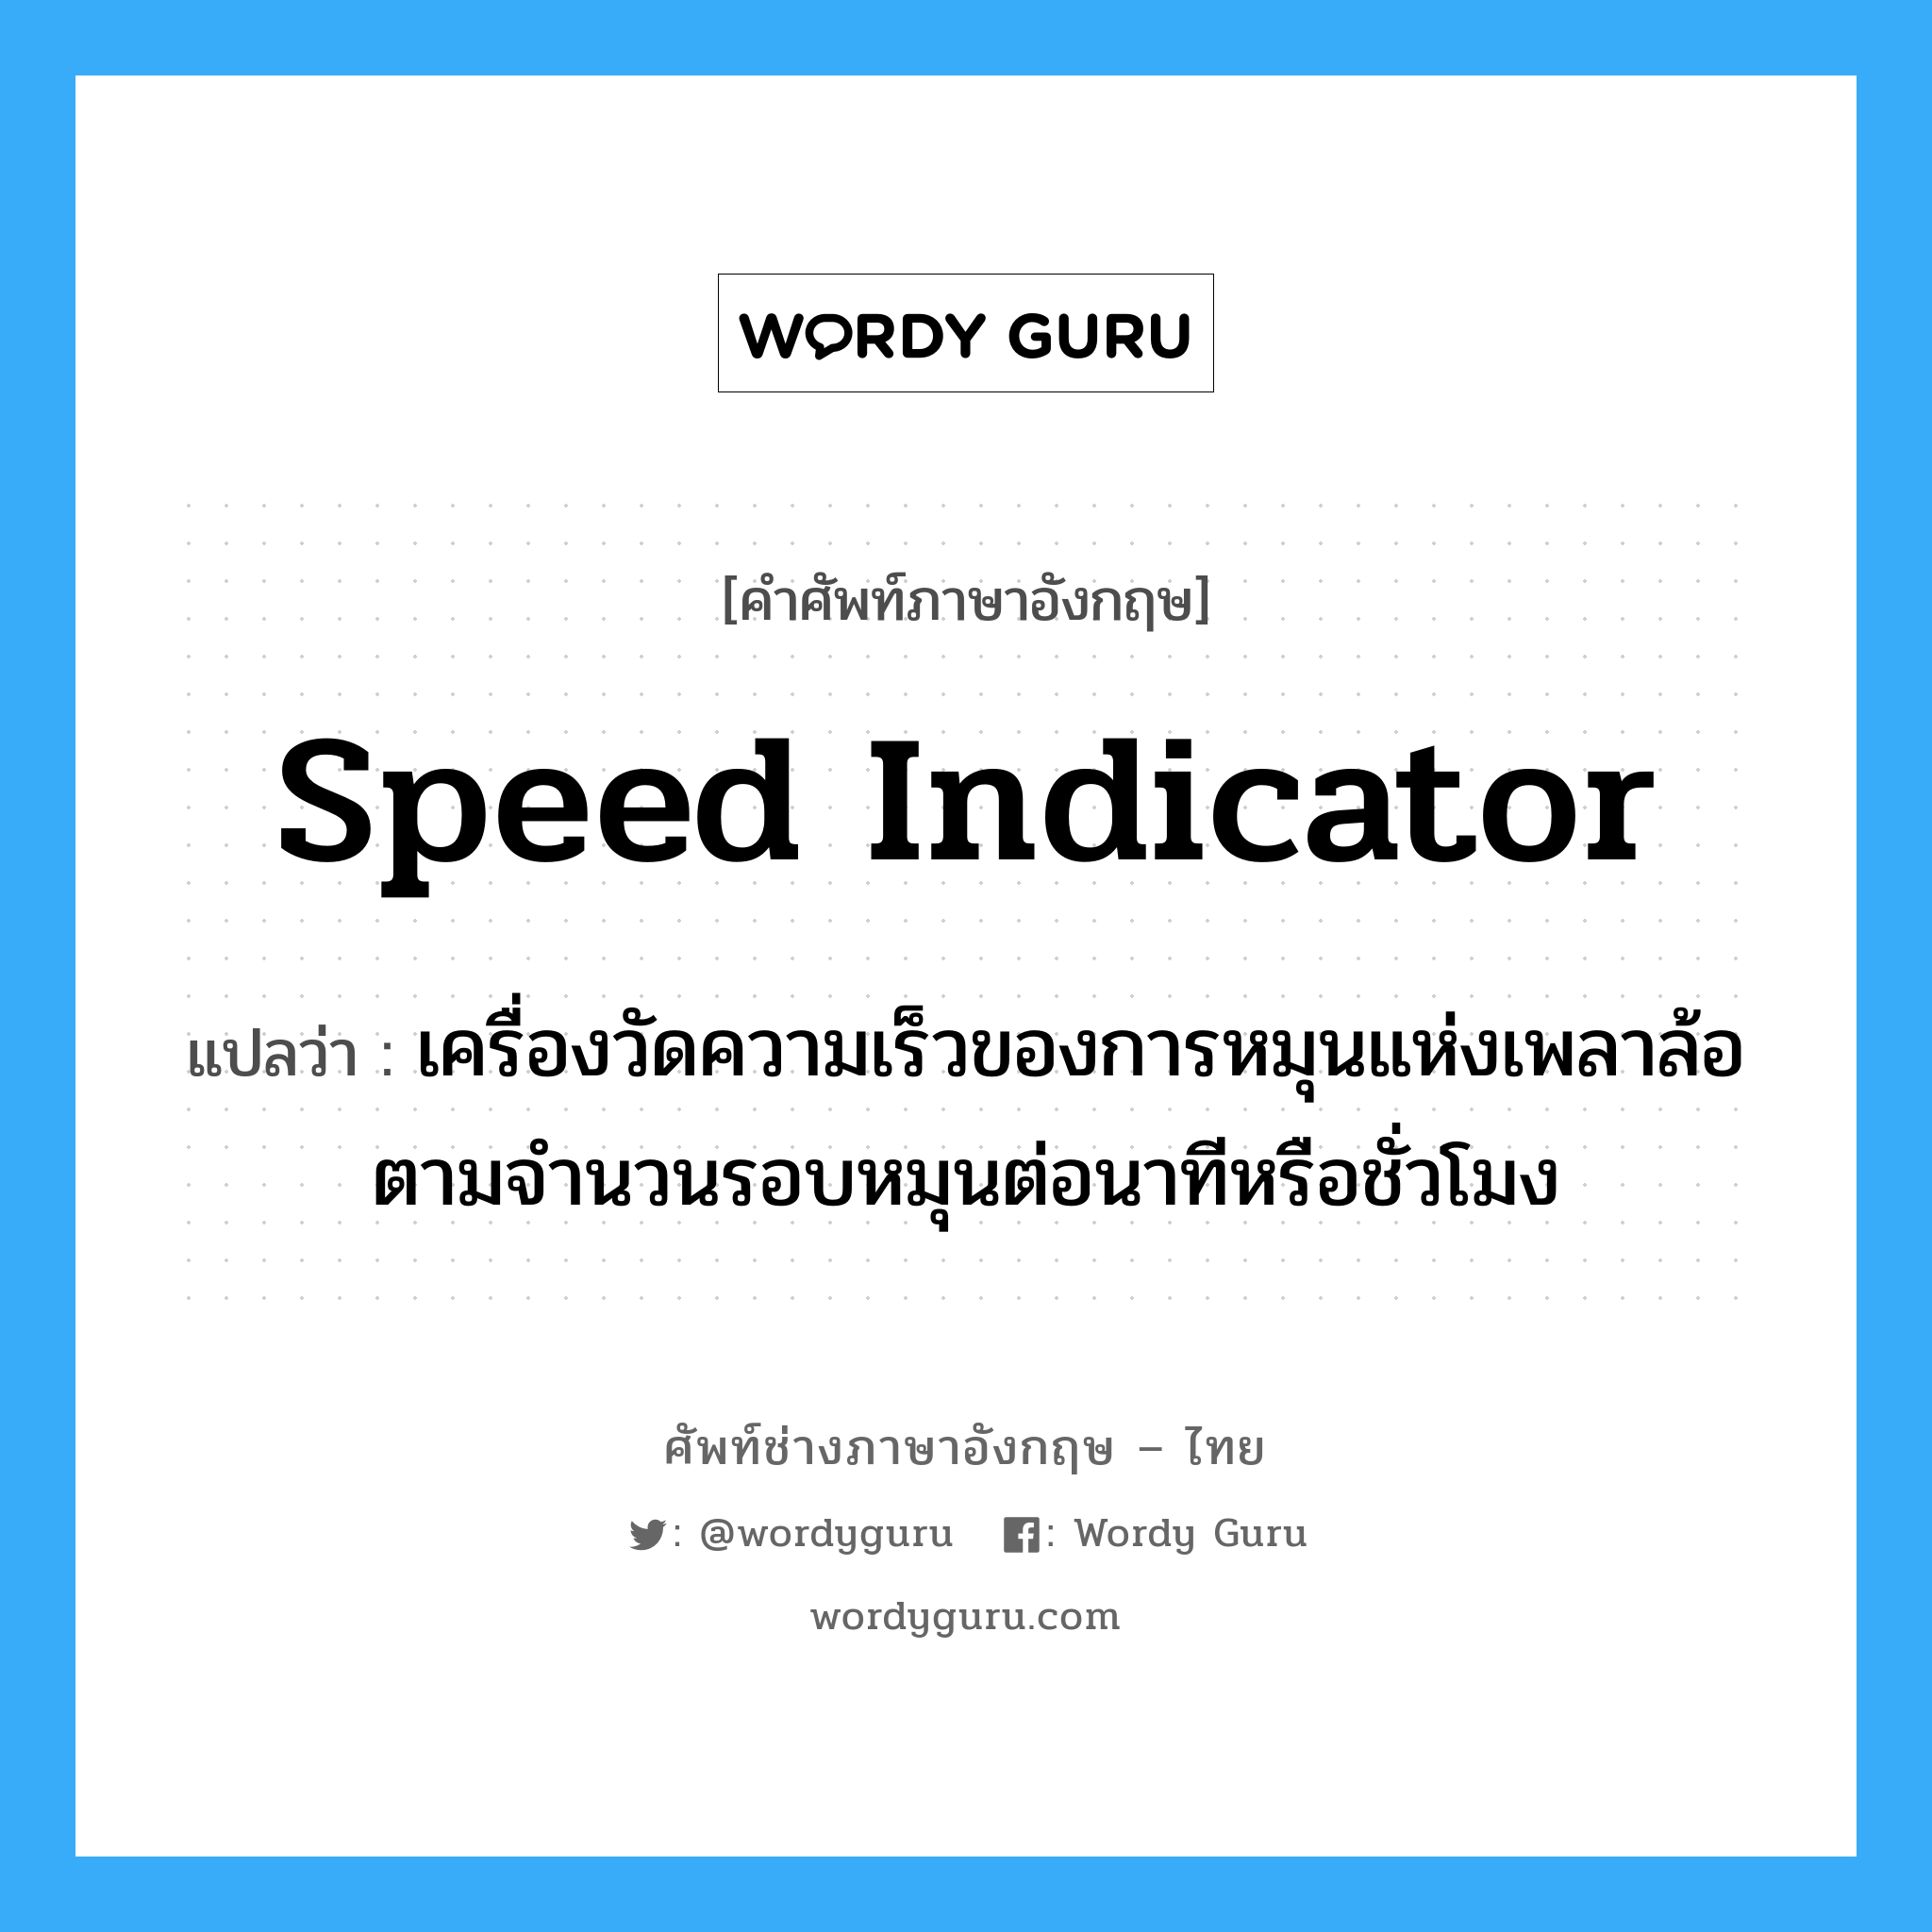 speed indicator แปลว่า?, คำศัพท์ช่างภาษาอังกฤษ - ไทย speed indicator คำศัพท์ภาษาอังกฤษ speed indicator แปลว่า เครื่องวัดความเร็วของการหมุนแห่งเพลาล้อ ตามจำนวนรอบหมุนต่อนาทีหรือชั่วโมง